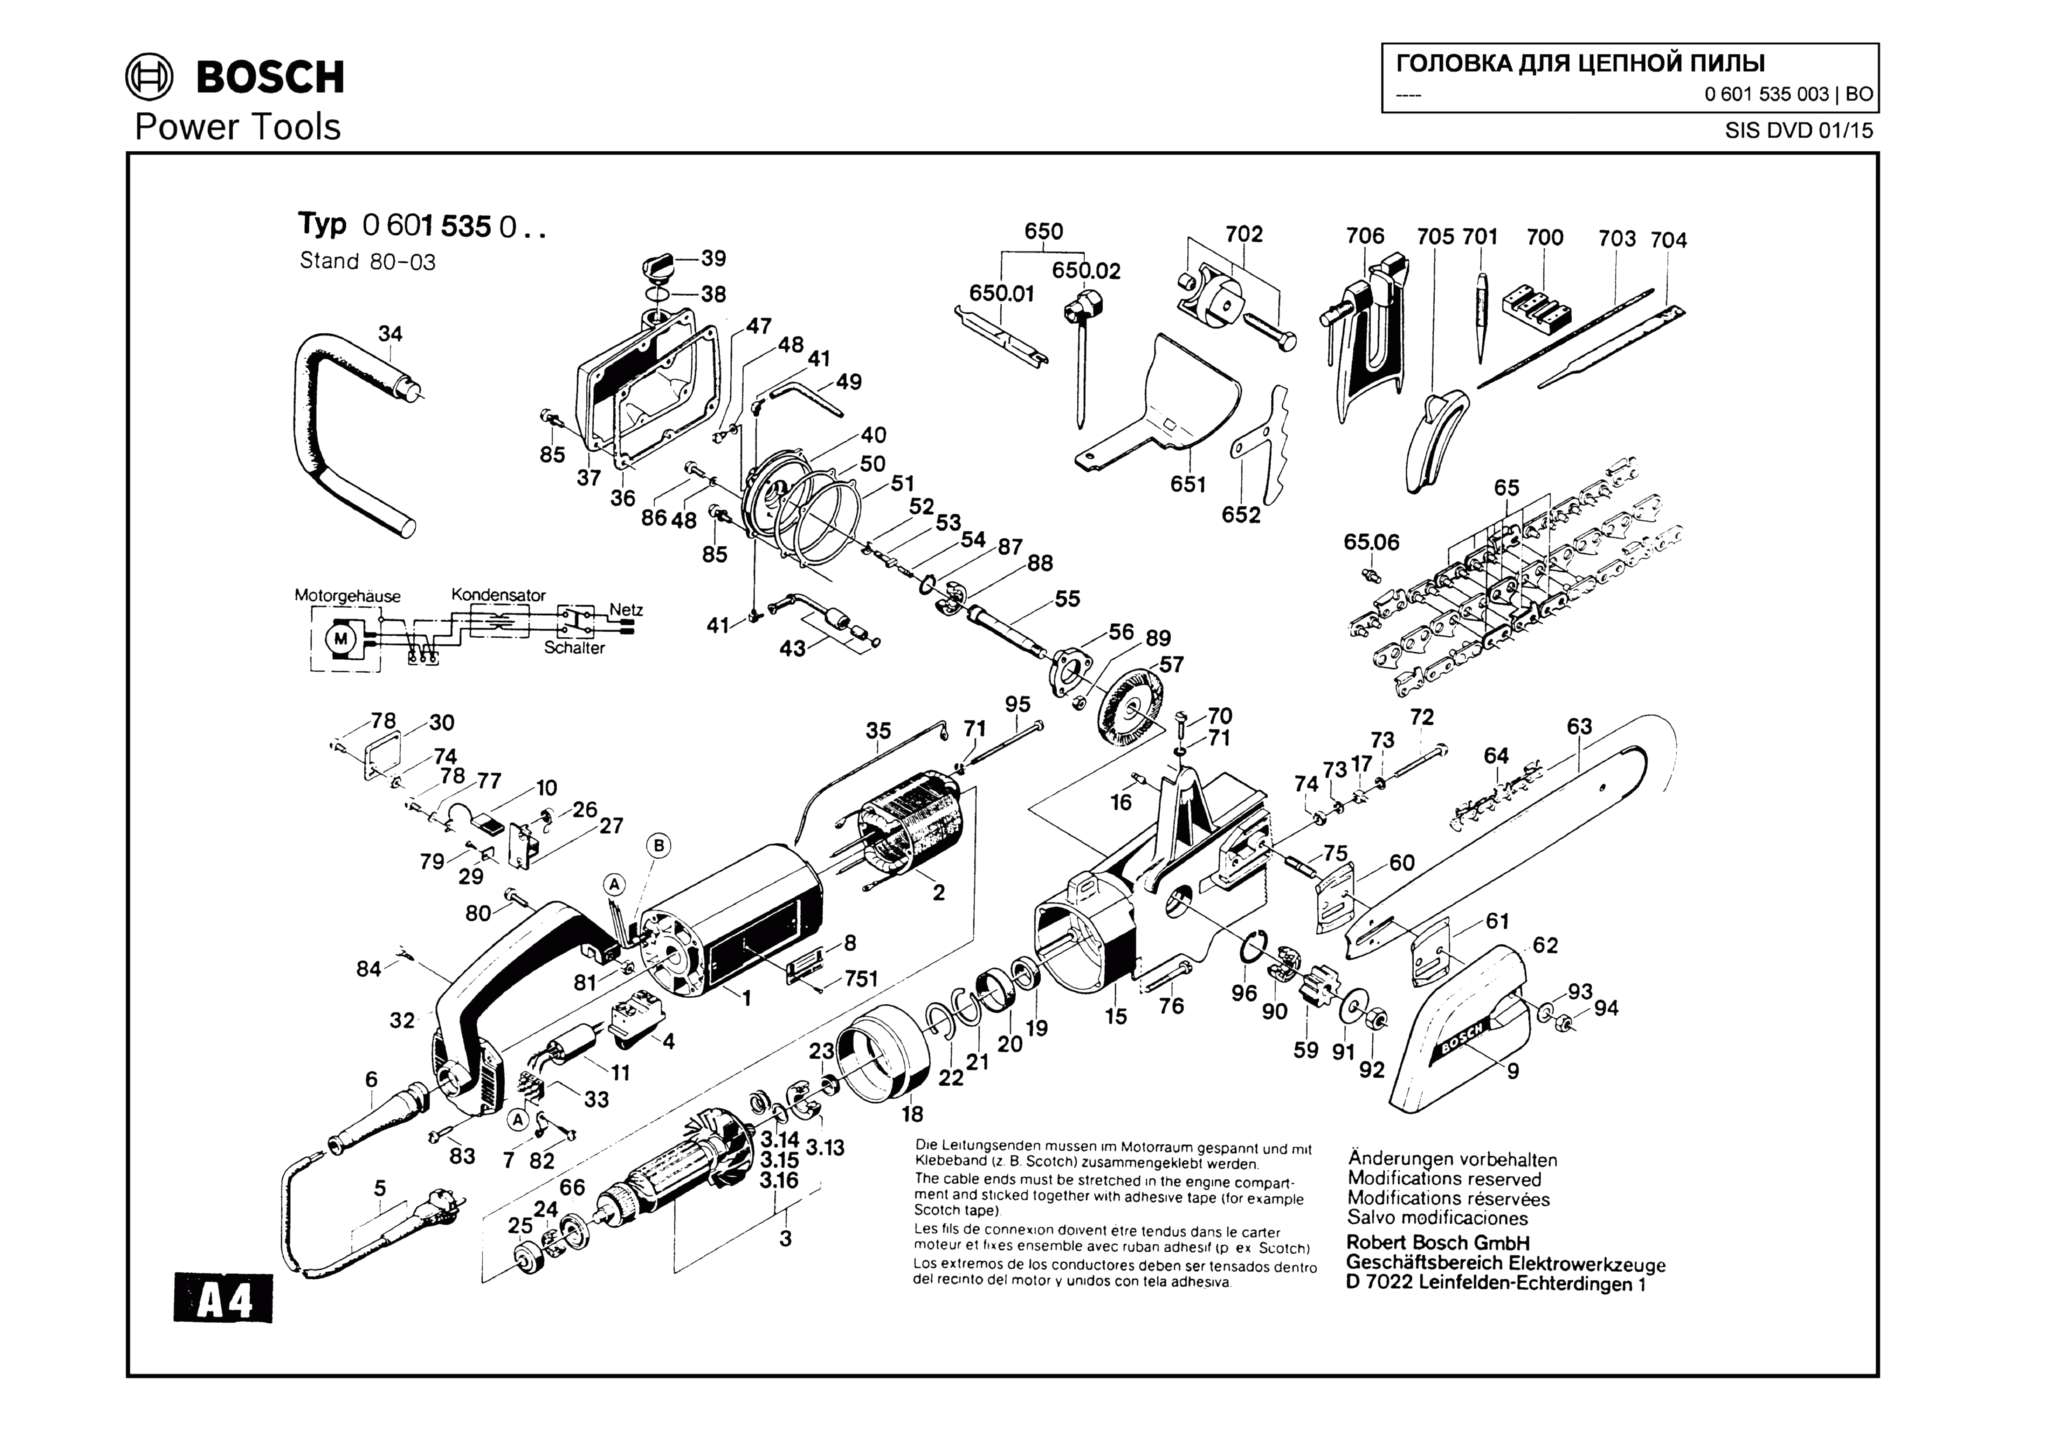 Запчасти, схема и деталировка Bosch (ТИП 0601535003)